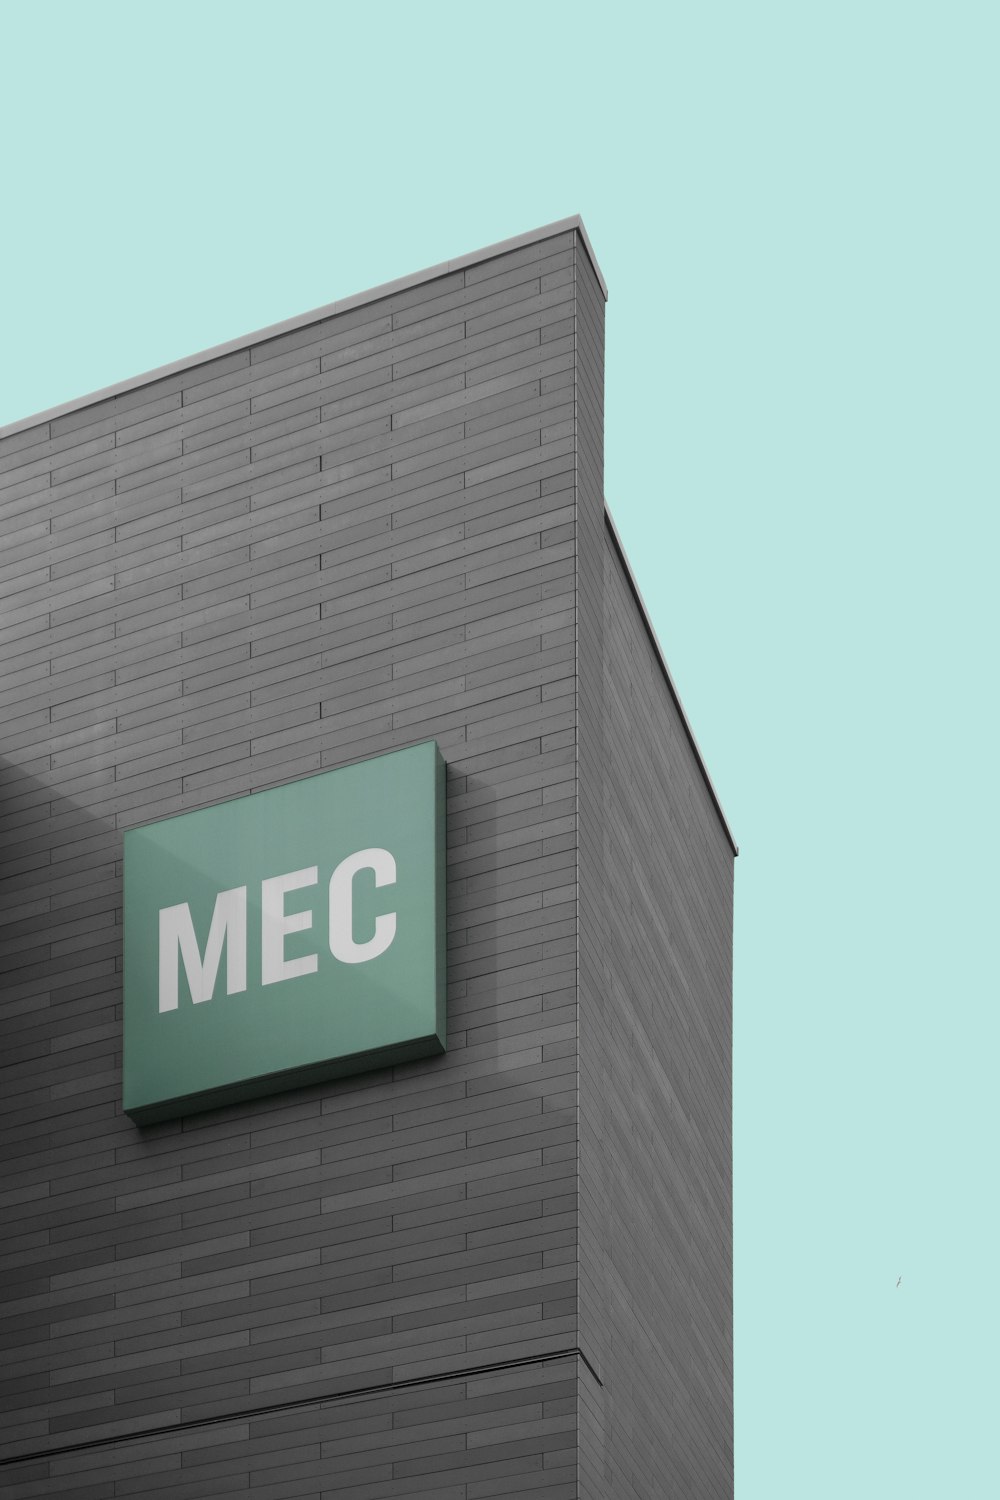 MEC signage